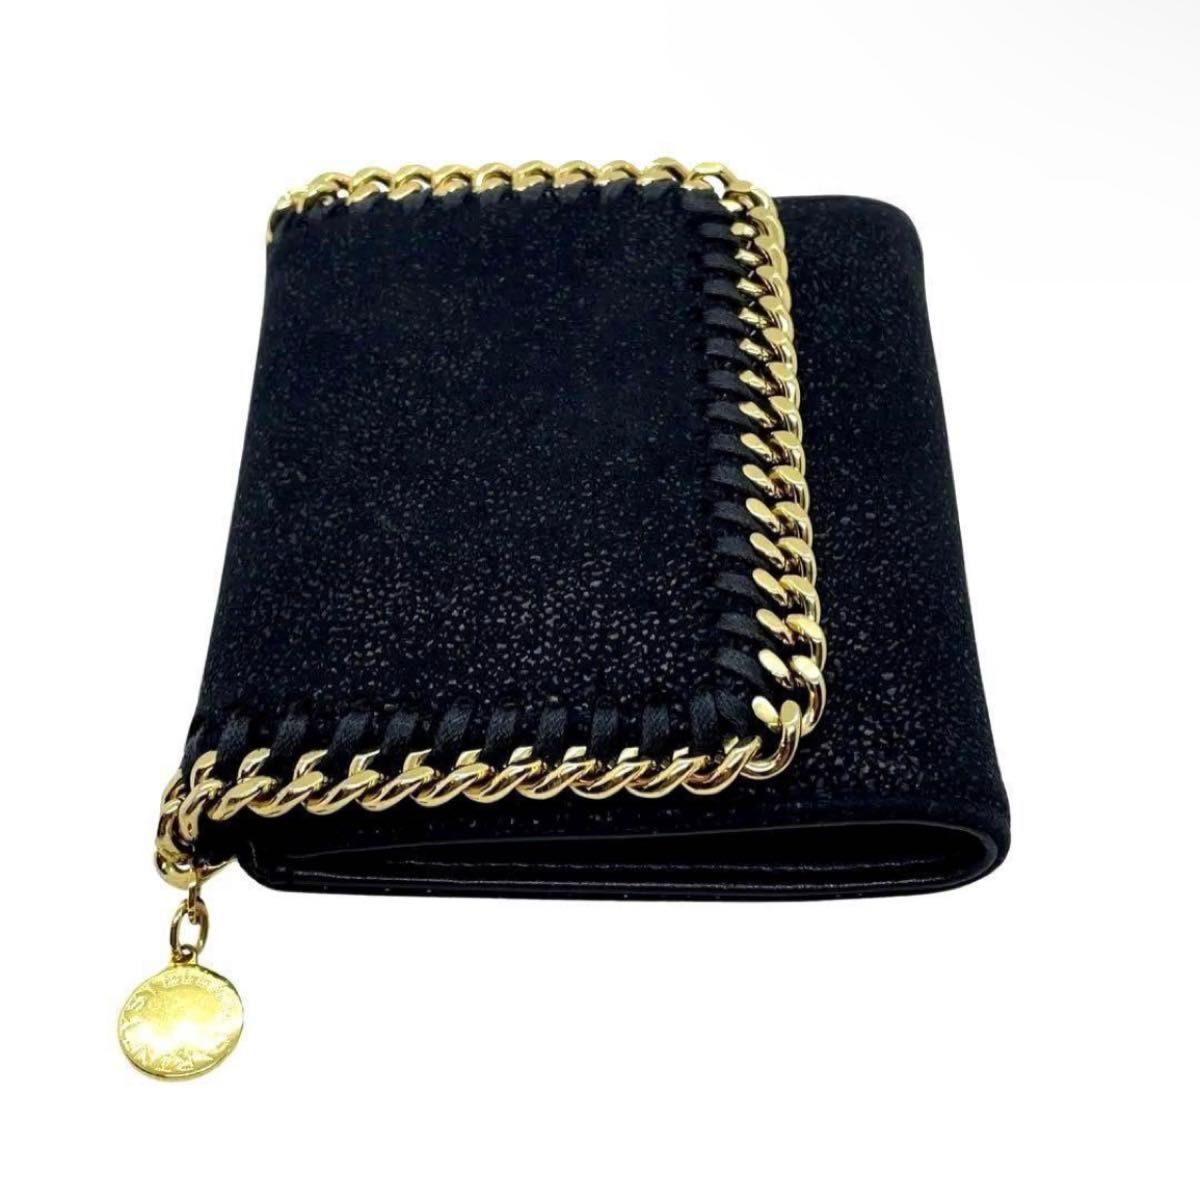 一点物 正規品 ステラマッカートニー 財布 三つ折り ファラベラ プレゼント STELLAMcCARTNEY ブラック ゴールド 